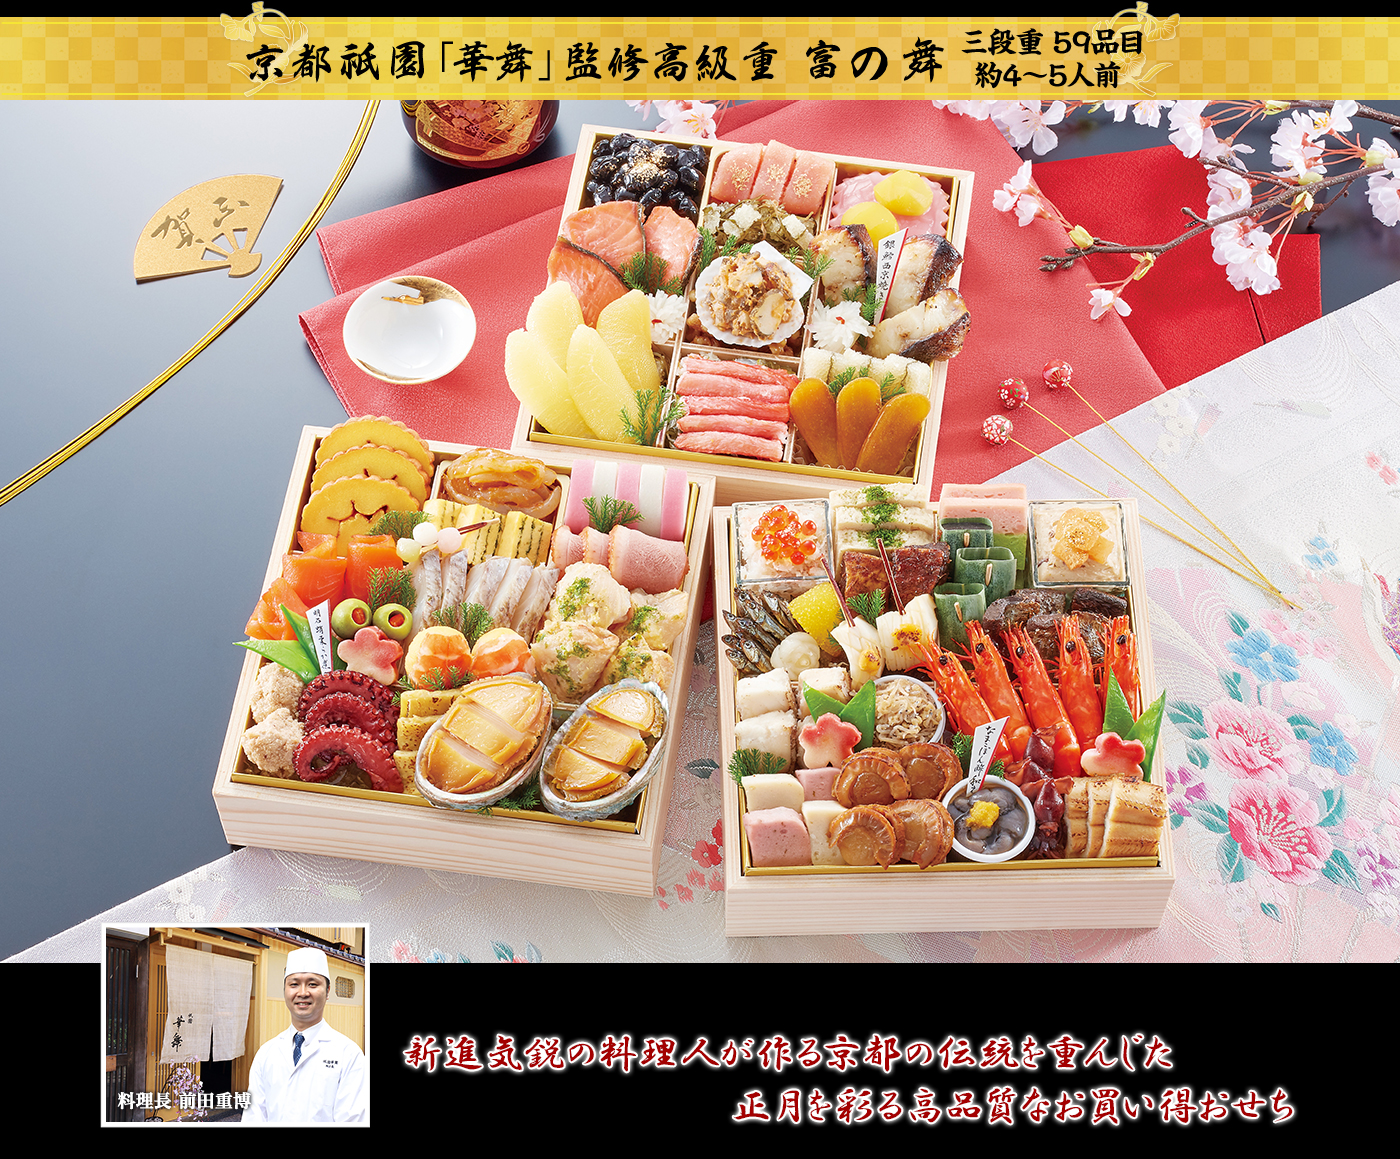 京都祇園「華舞」監修高級重 富の舞 新進気鋭の料理人が作る京都の伝統を重んじた正月を彩る高品質なお買い得おせち